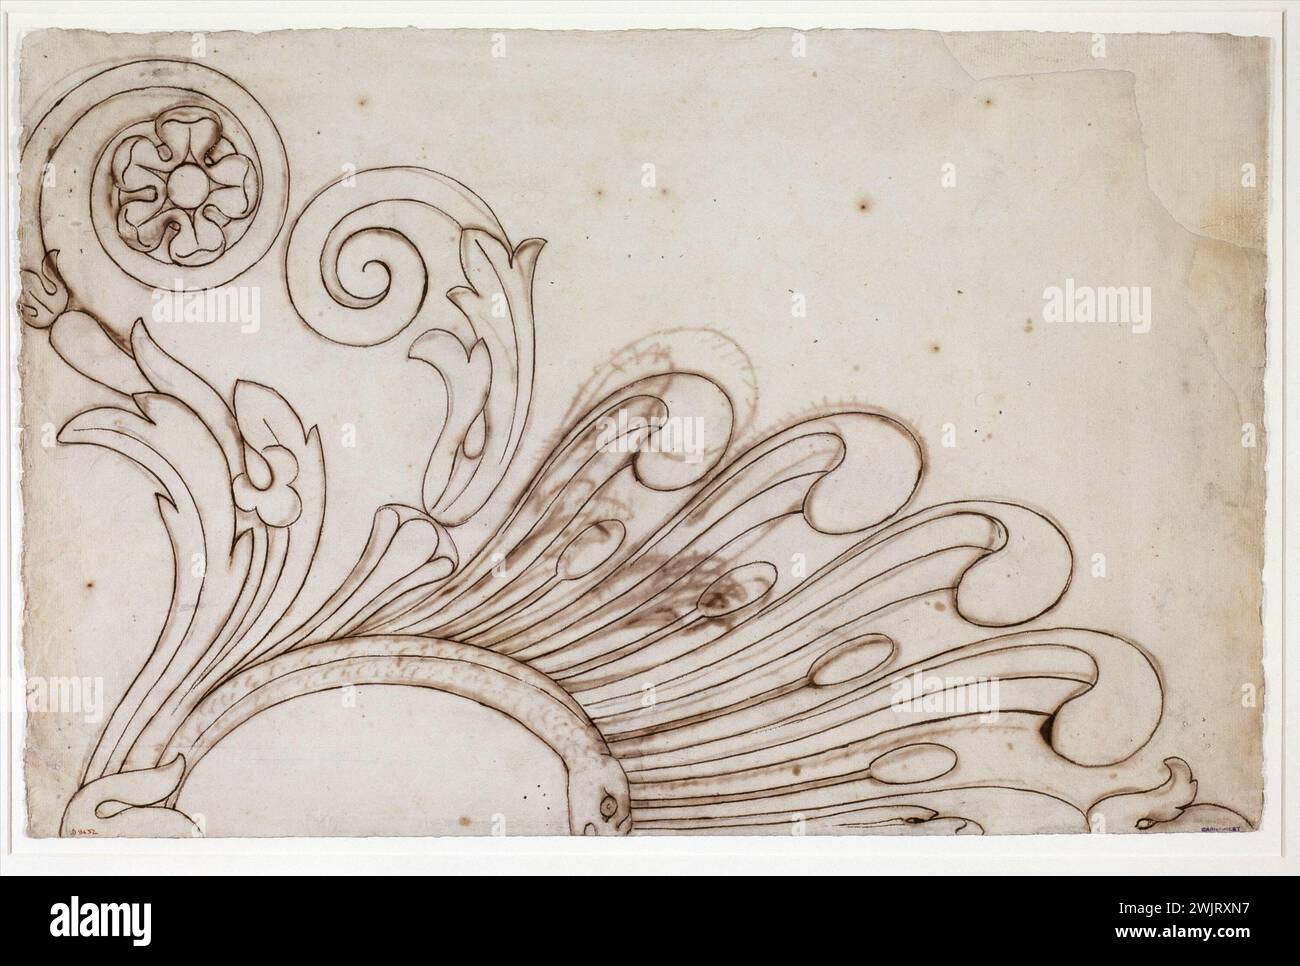 Guillaume Boichot (1735-1814). Gefieder, die Arabesken bilden (Tauchzeichnung). Bistre Feder und Tinte, 1735-1815. Paris, Carnavalet Museum. 79254-22 ZEICHNUNG Stockfoto